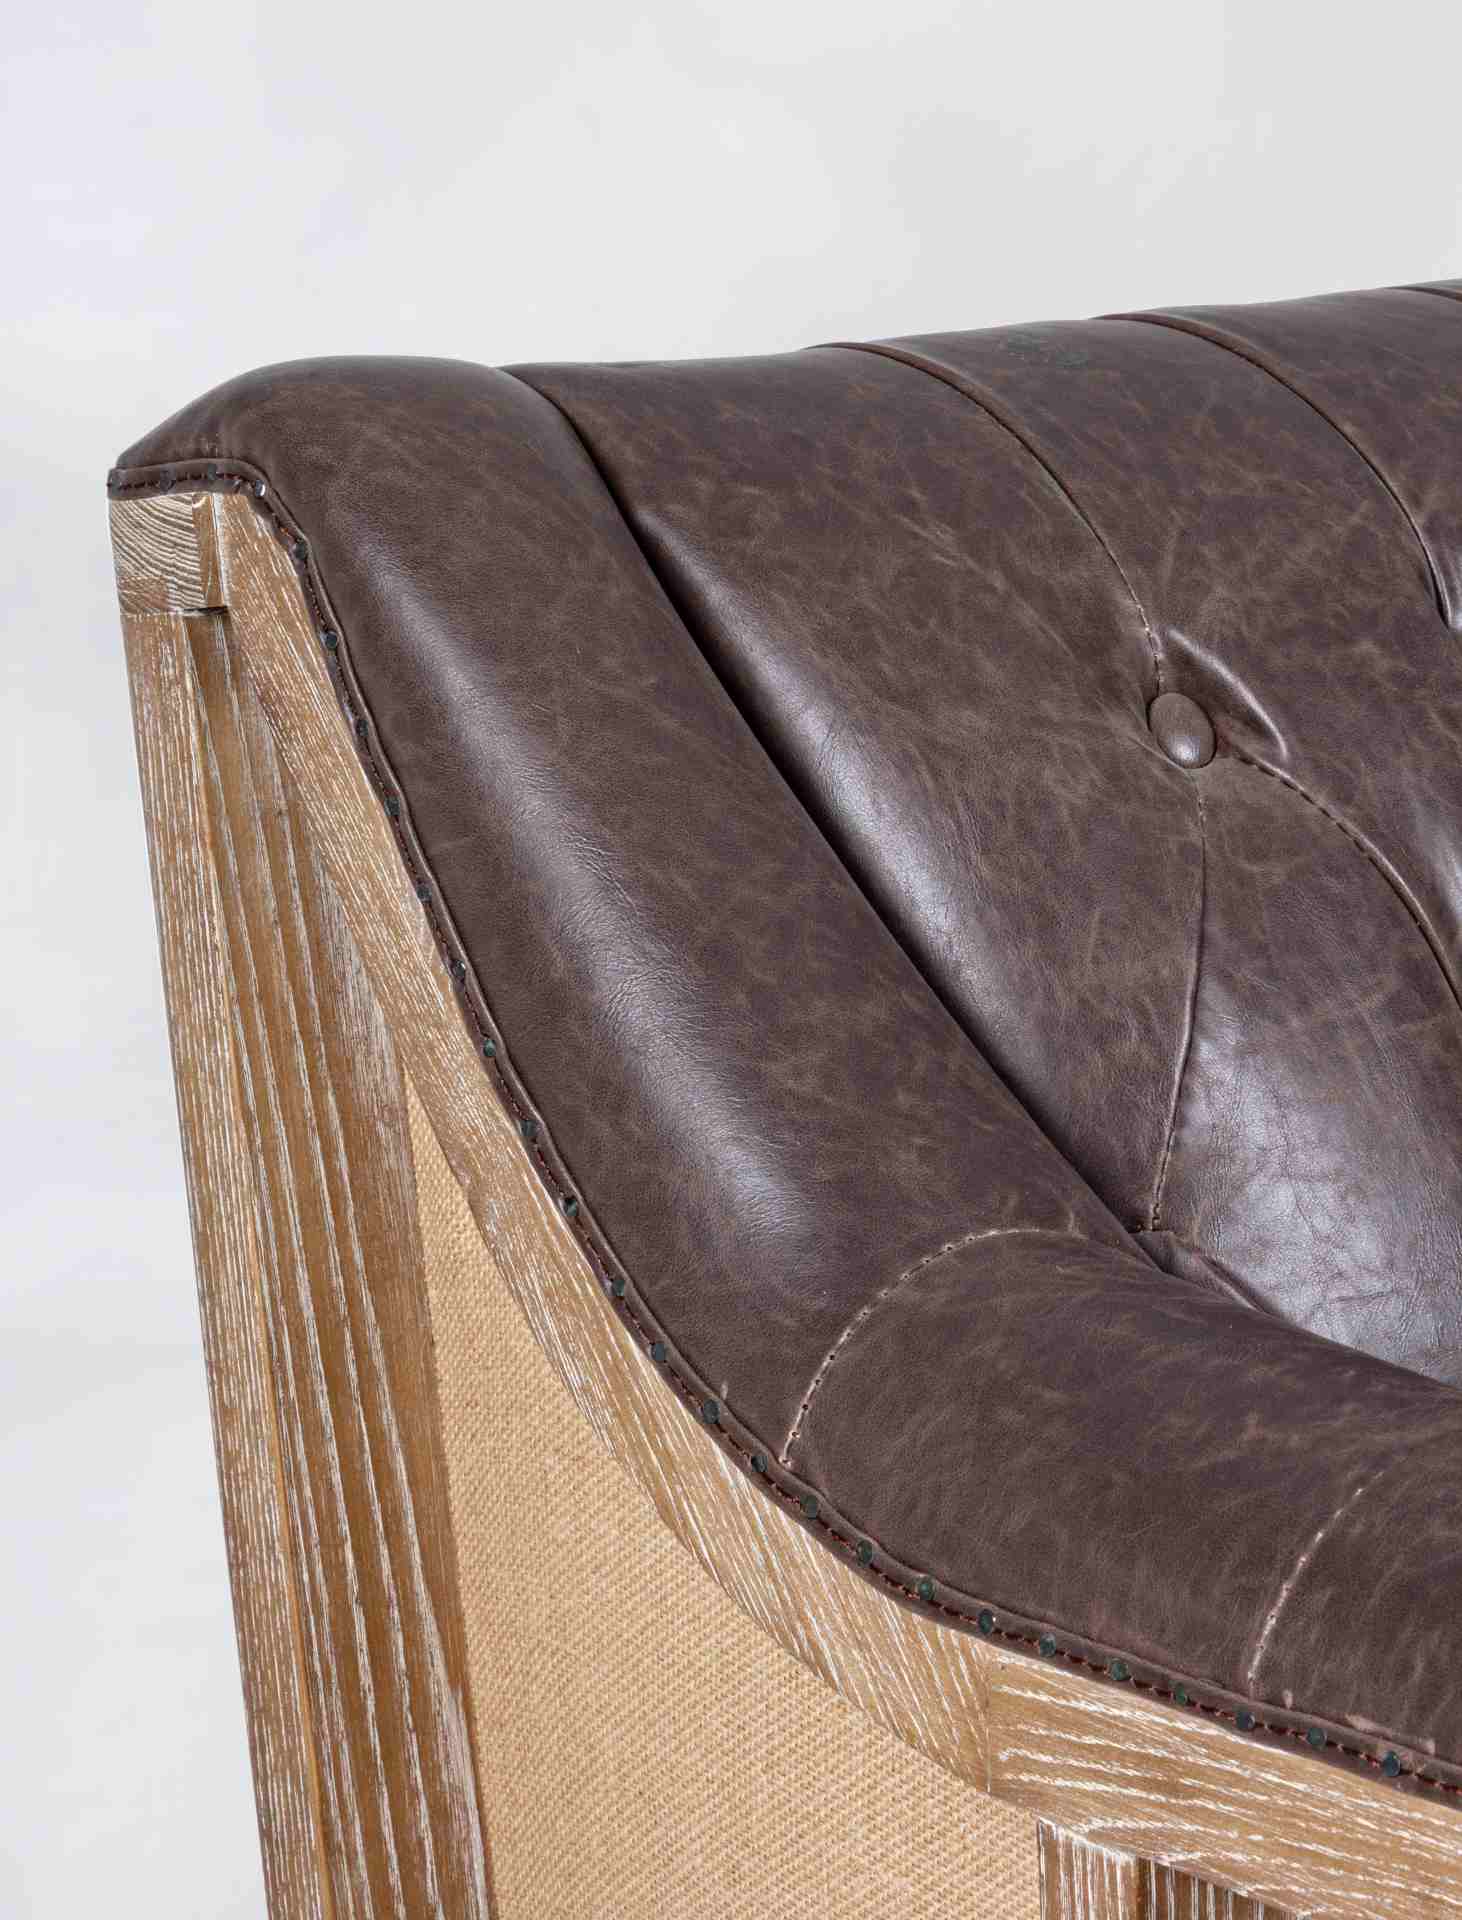 Das Sofa Raymond überzeugt mit seinem klassischen Design. Gefertigt wurde es aus Kunstleder, welches einen braunen Farbton besitzt. Das Gestell ist aus Eschenholz und hat eine natürliche Farbe. Das Sofa ist in der Ausführung als 3-Sitzer. Die Breite beträ